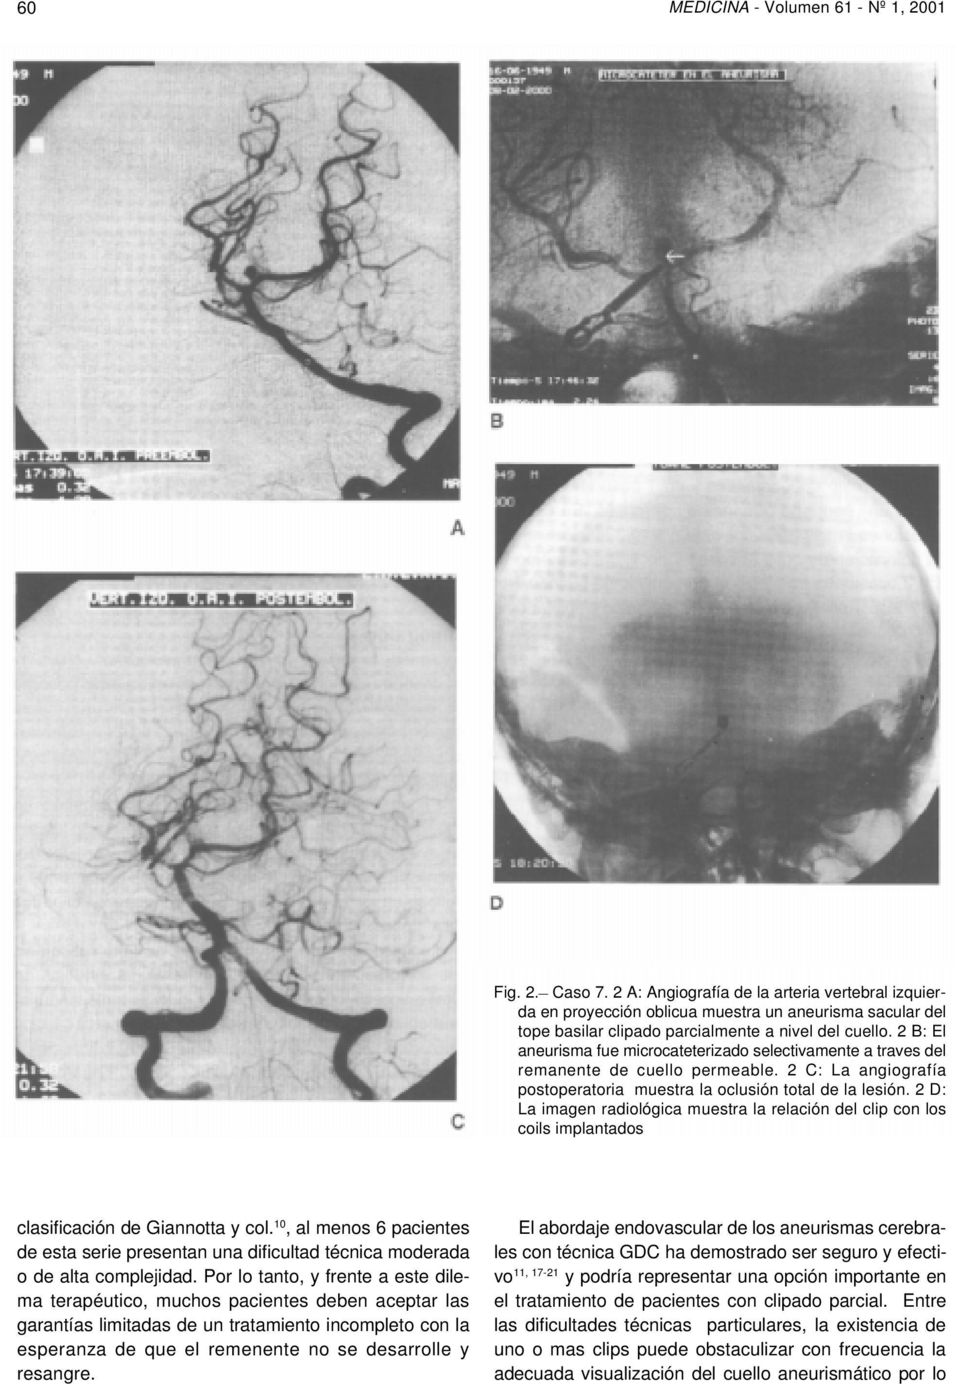 2 B: El aneurisma fue microcateterizado selectivamente a traves del remanente de cuello permeable. 2 C: La angiografía postoperatoria muestra la oclusión total de la lesión.